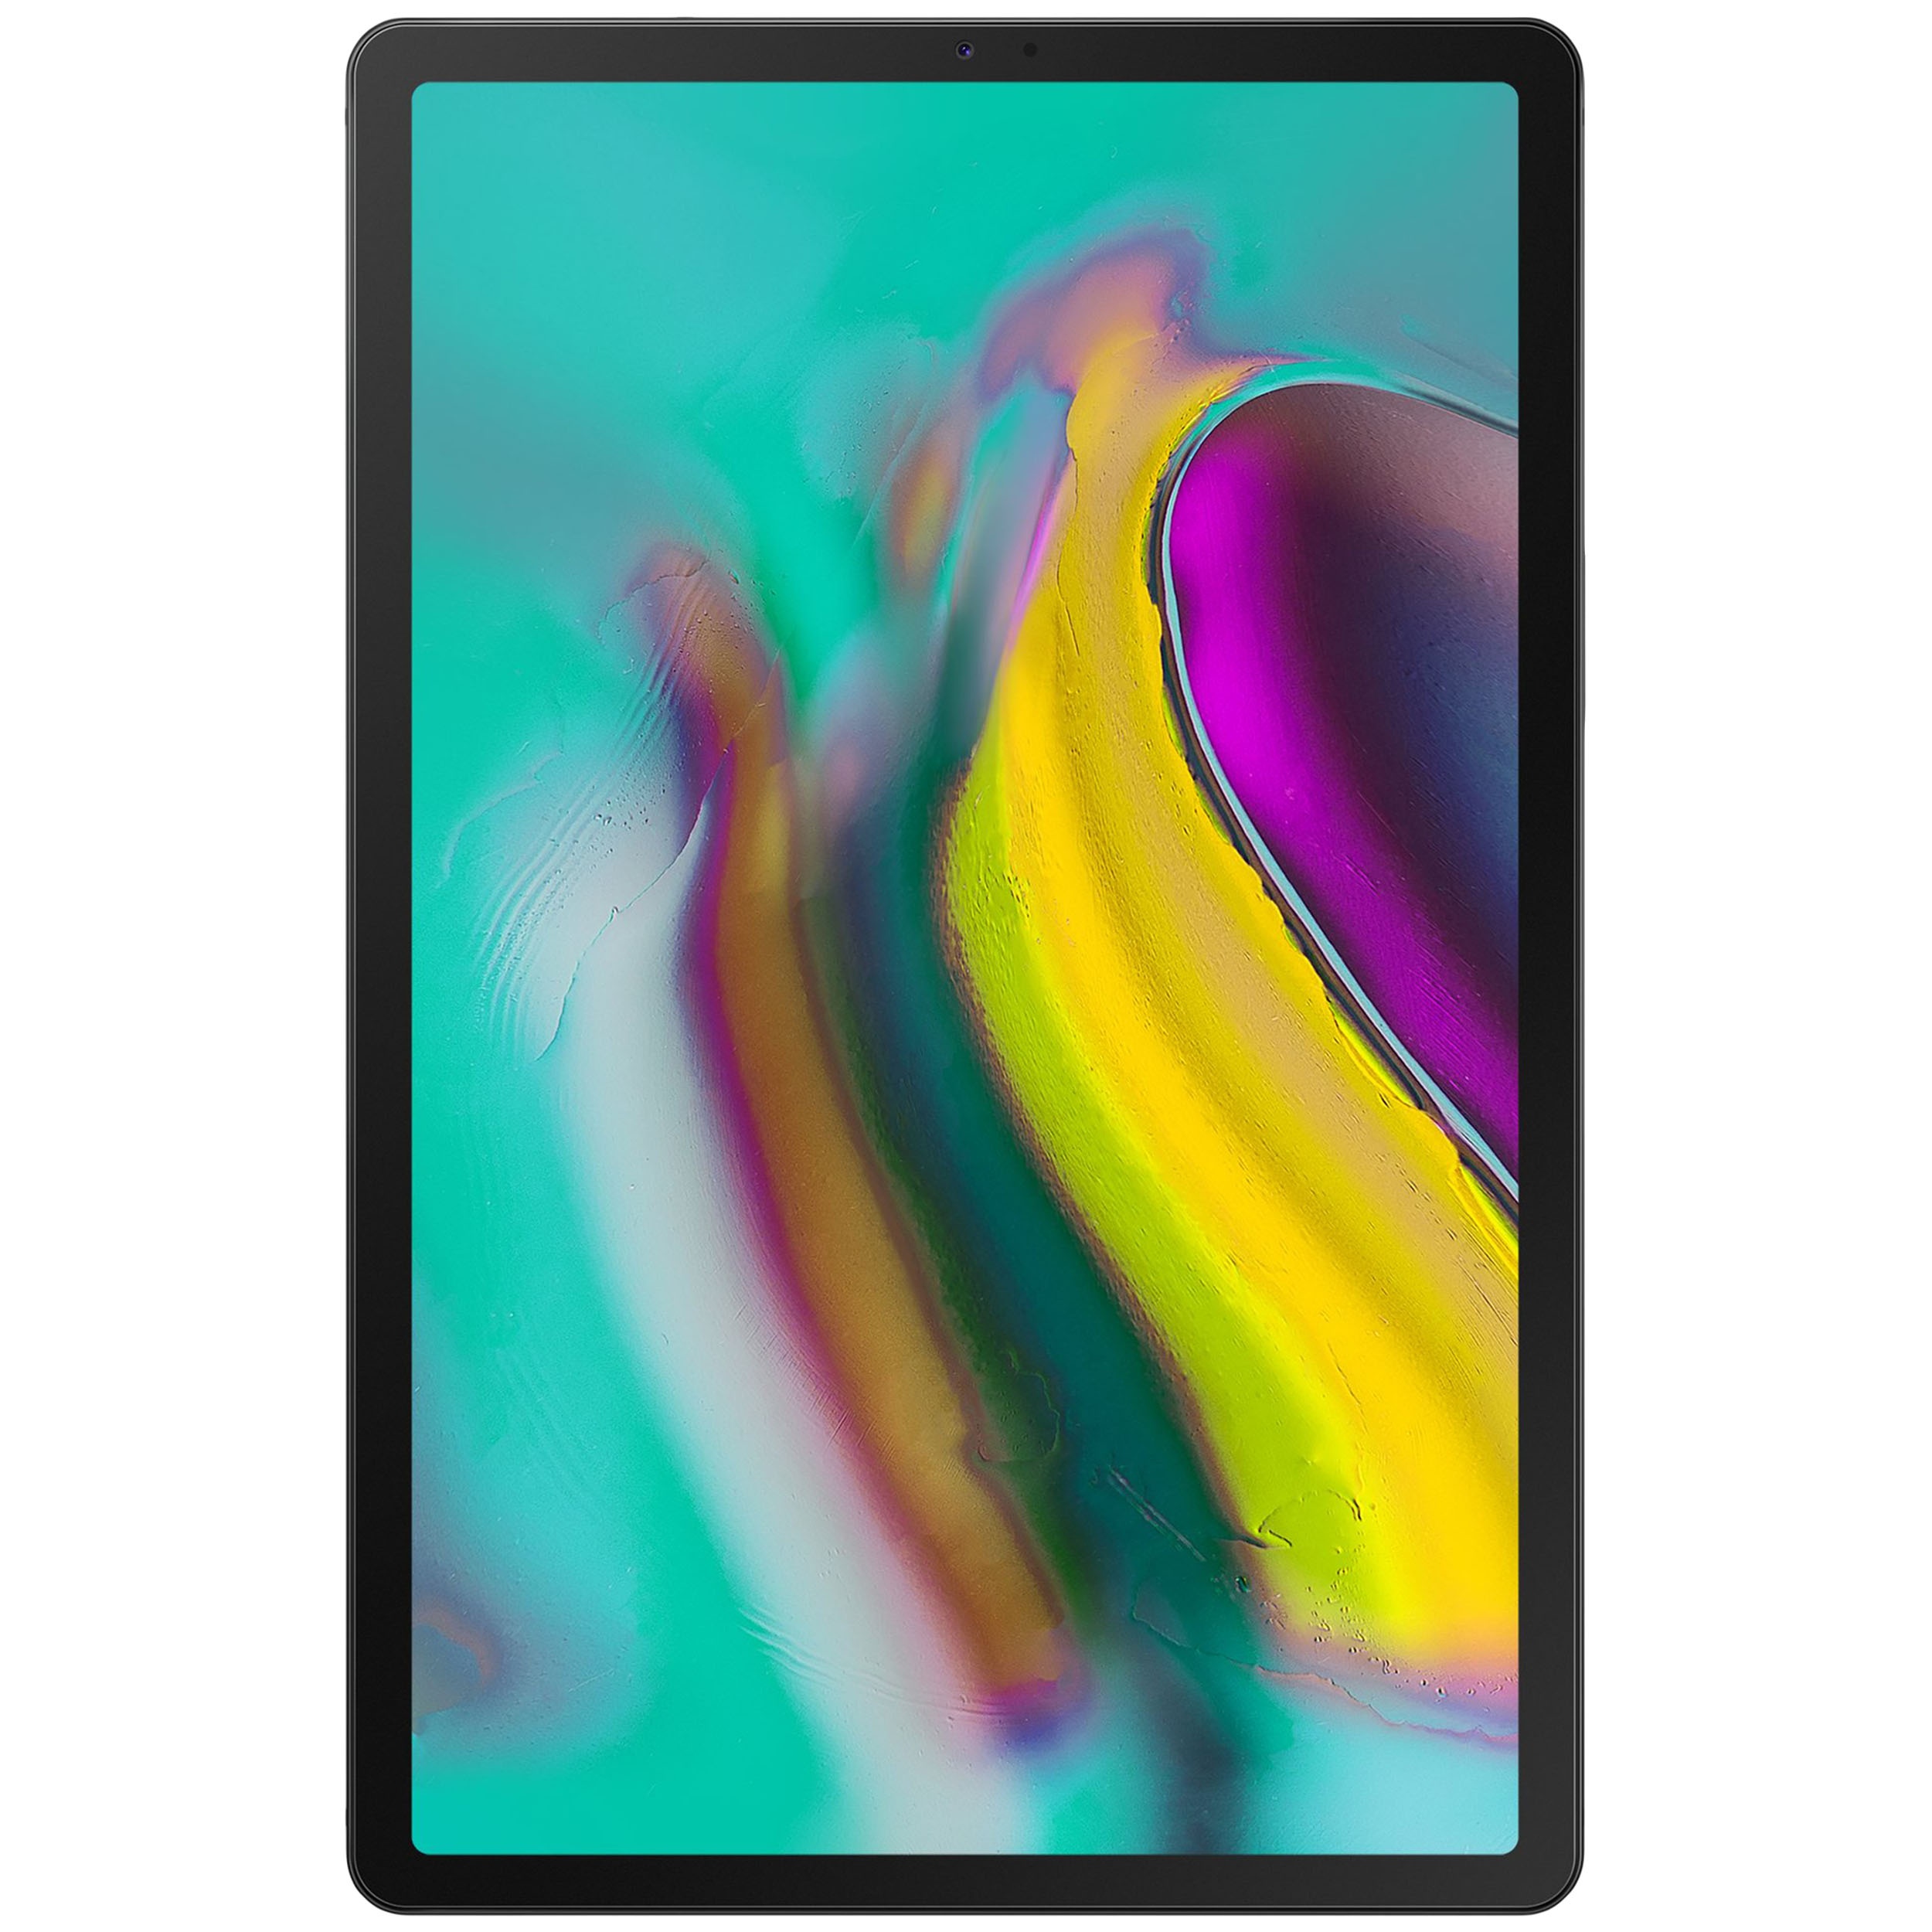 تبلت سامسونگ مدل Galaxy Tab S5e 10.5 WIFI 2019 SM-T720 ظرفیت 64 گیگابایت